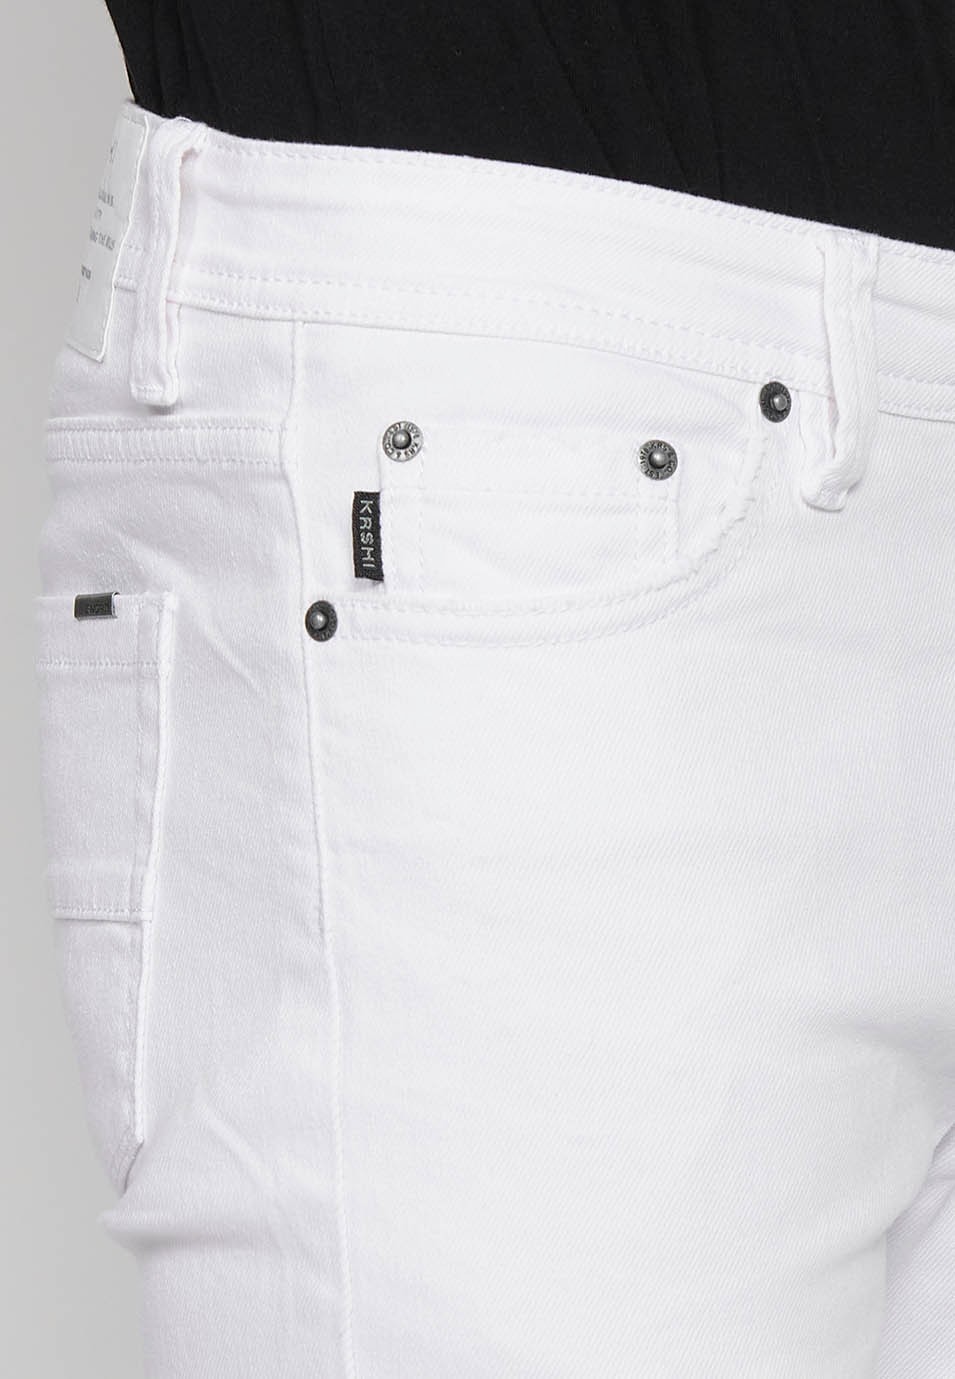 Pantalons jeans super skinny amb Tancament davanter amb cremallera i botó de Color Denim Blanc per a Home 4